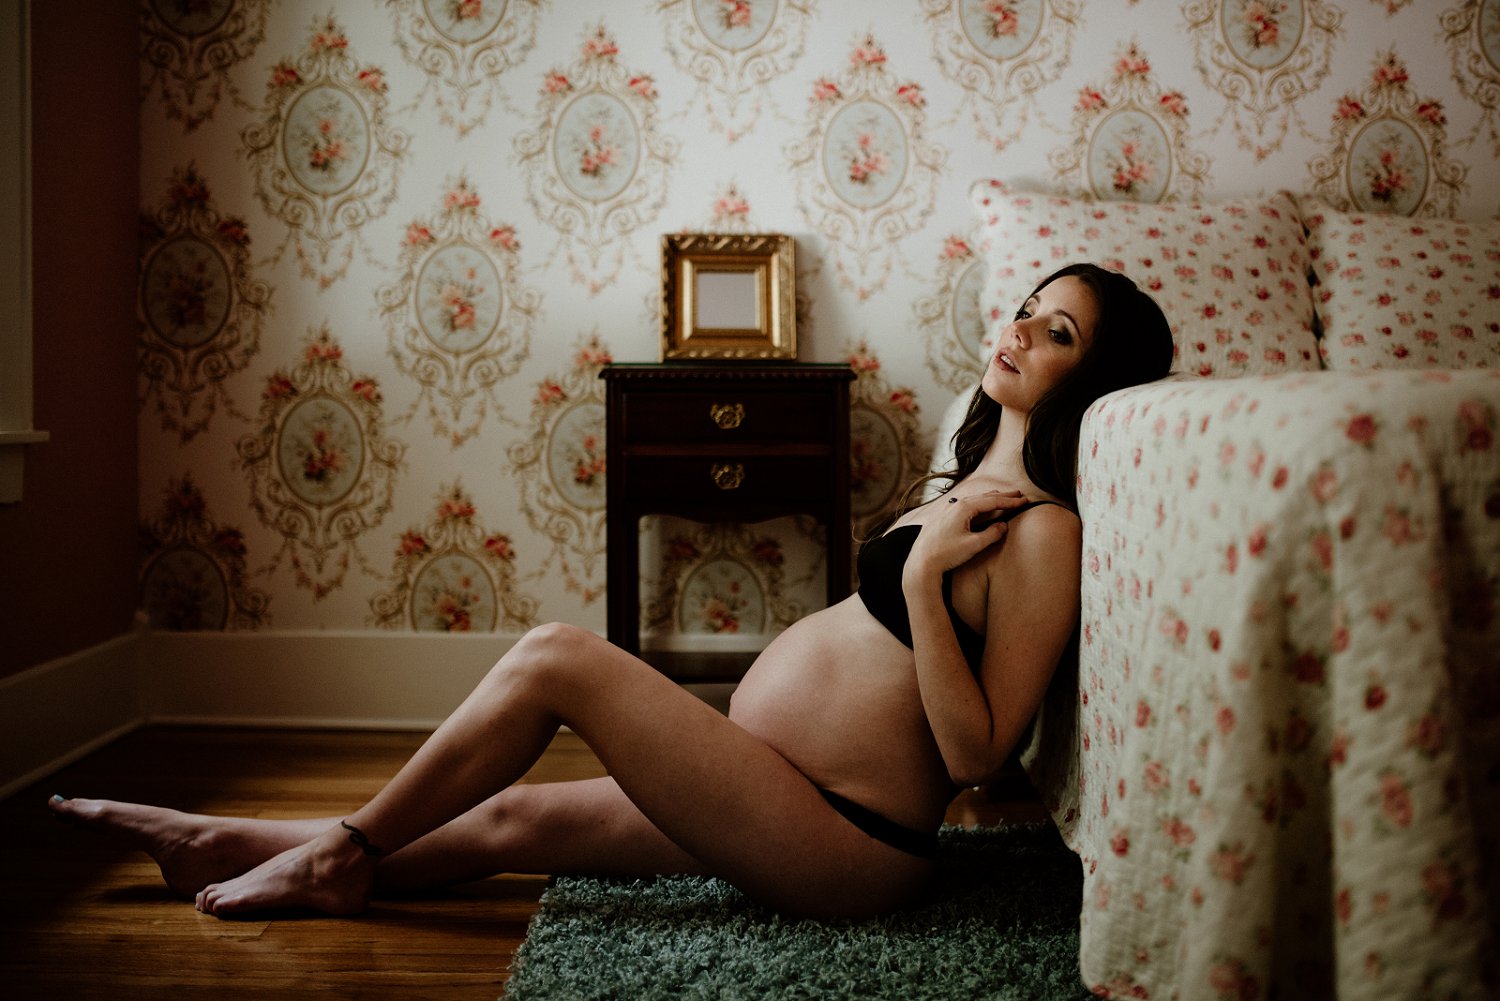 austin maternity boudoir photographer